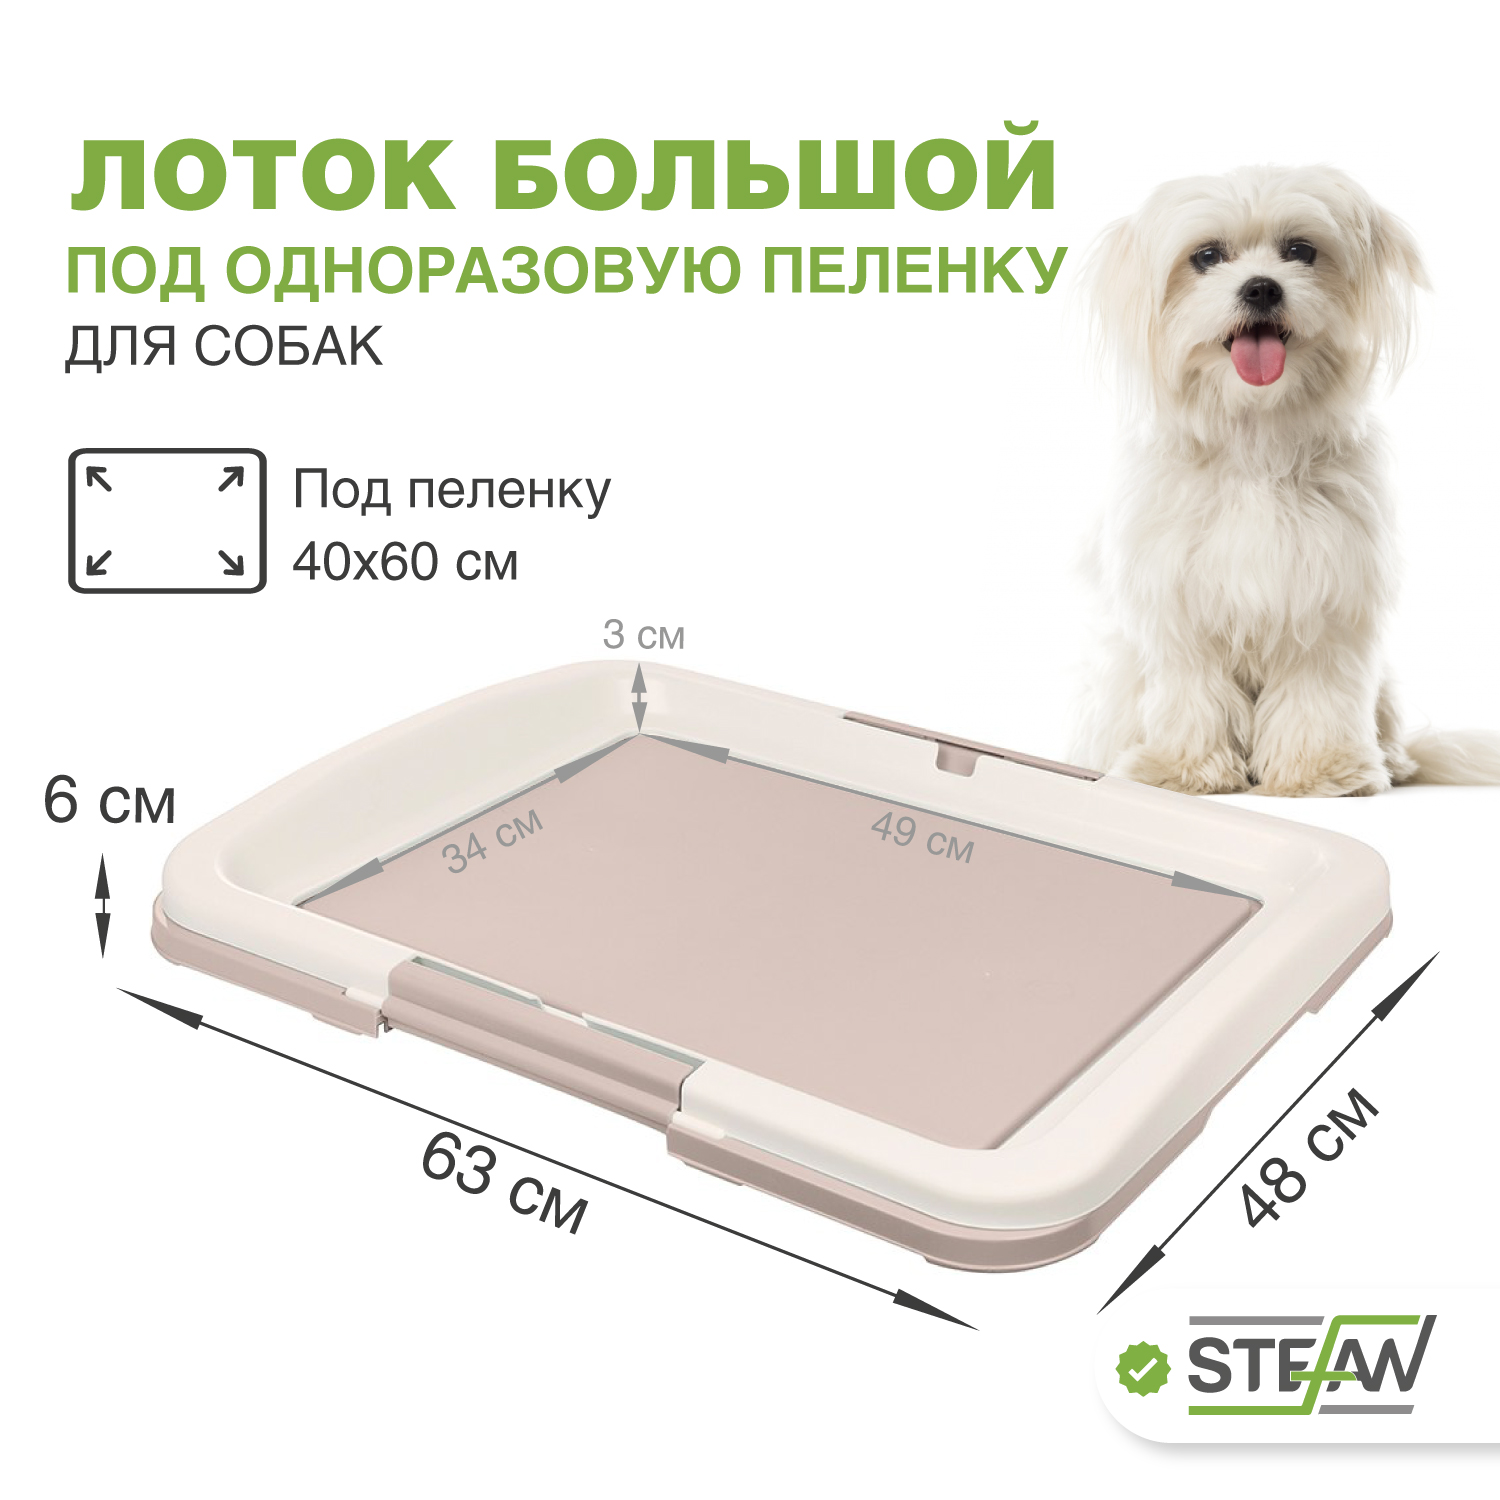 Туалет для собак STEFAN под одноразовую пеленку большой L размер 63x49, светло-коричневый